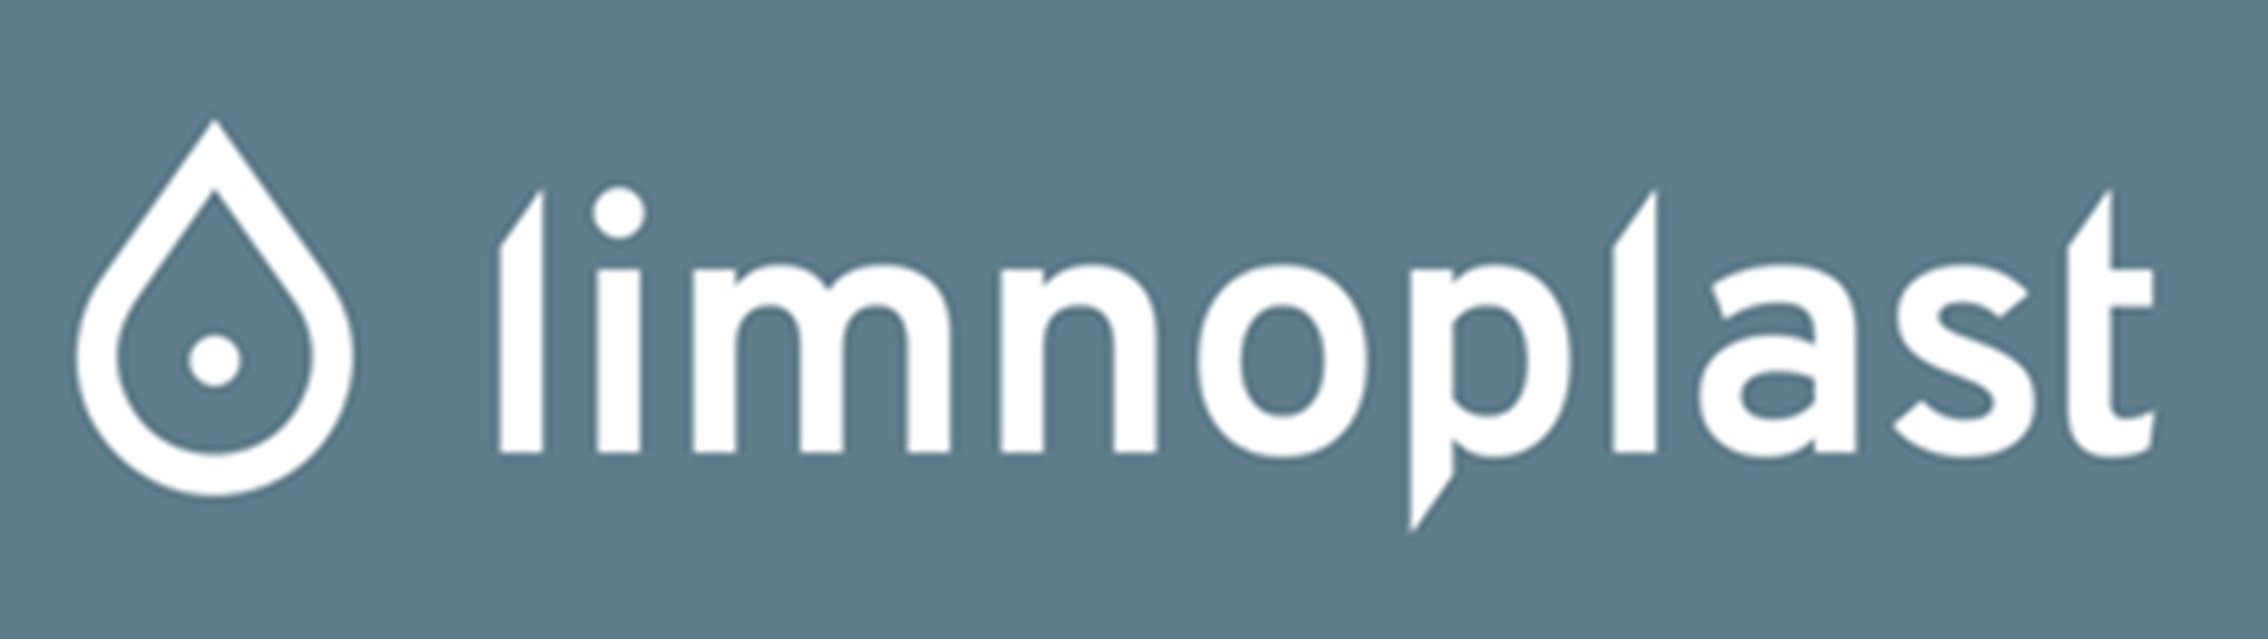 limnoplast_banner